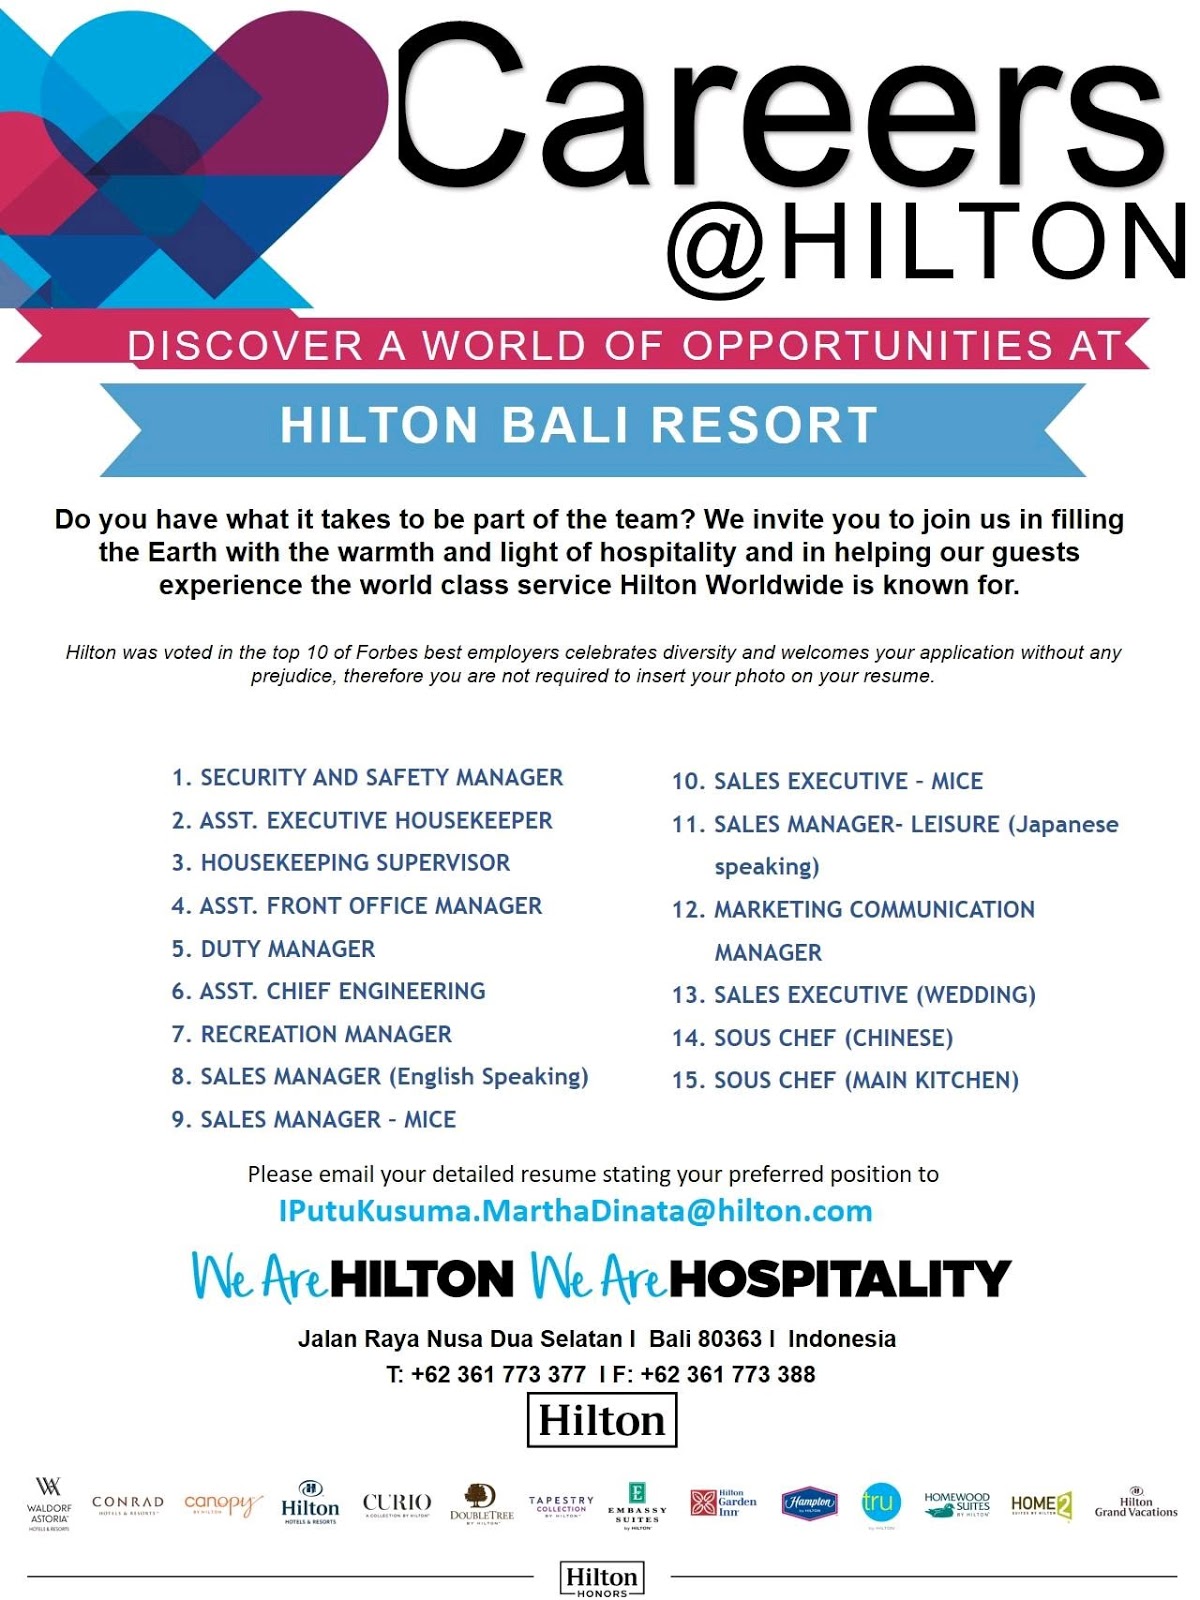 Lowongan Kerja HILTON BALI RESORT (15 POSISI) 2019 - lowongan kerja hotel